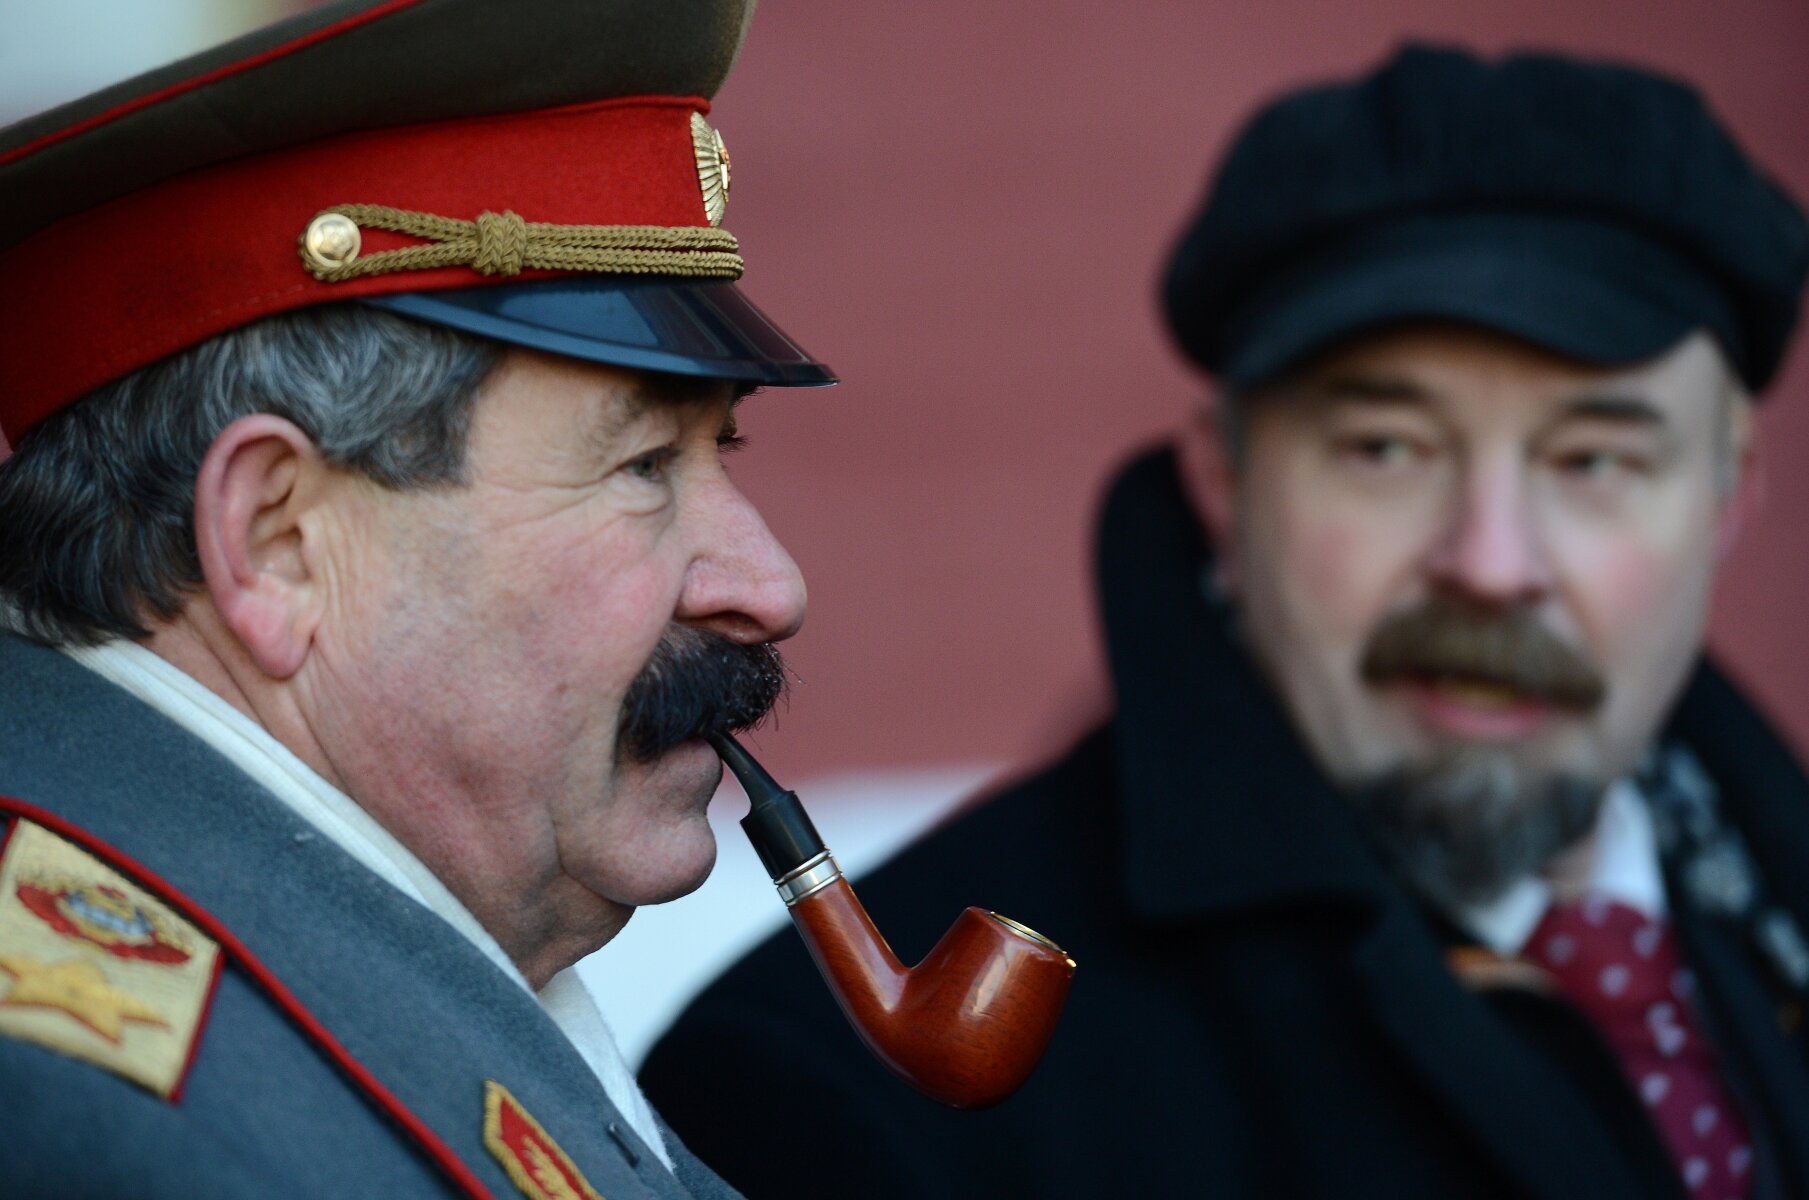 <p><strong>Двойники</strong></p>

<p>Так же на Красной площади туристам предлагают сфотографироваться с двойниками советских вождей, в том числе и со Сталиным.&nbsp;</p>